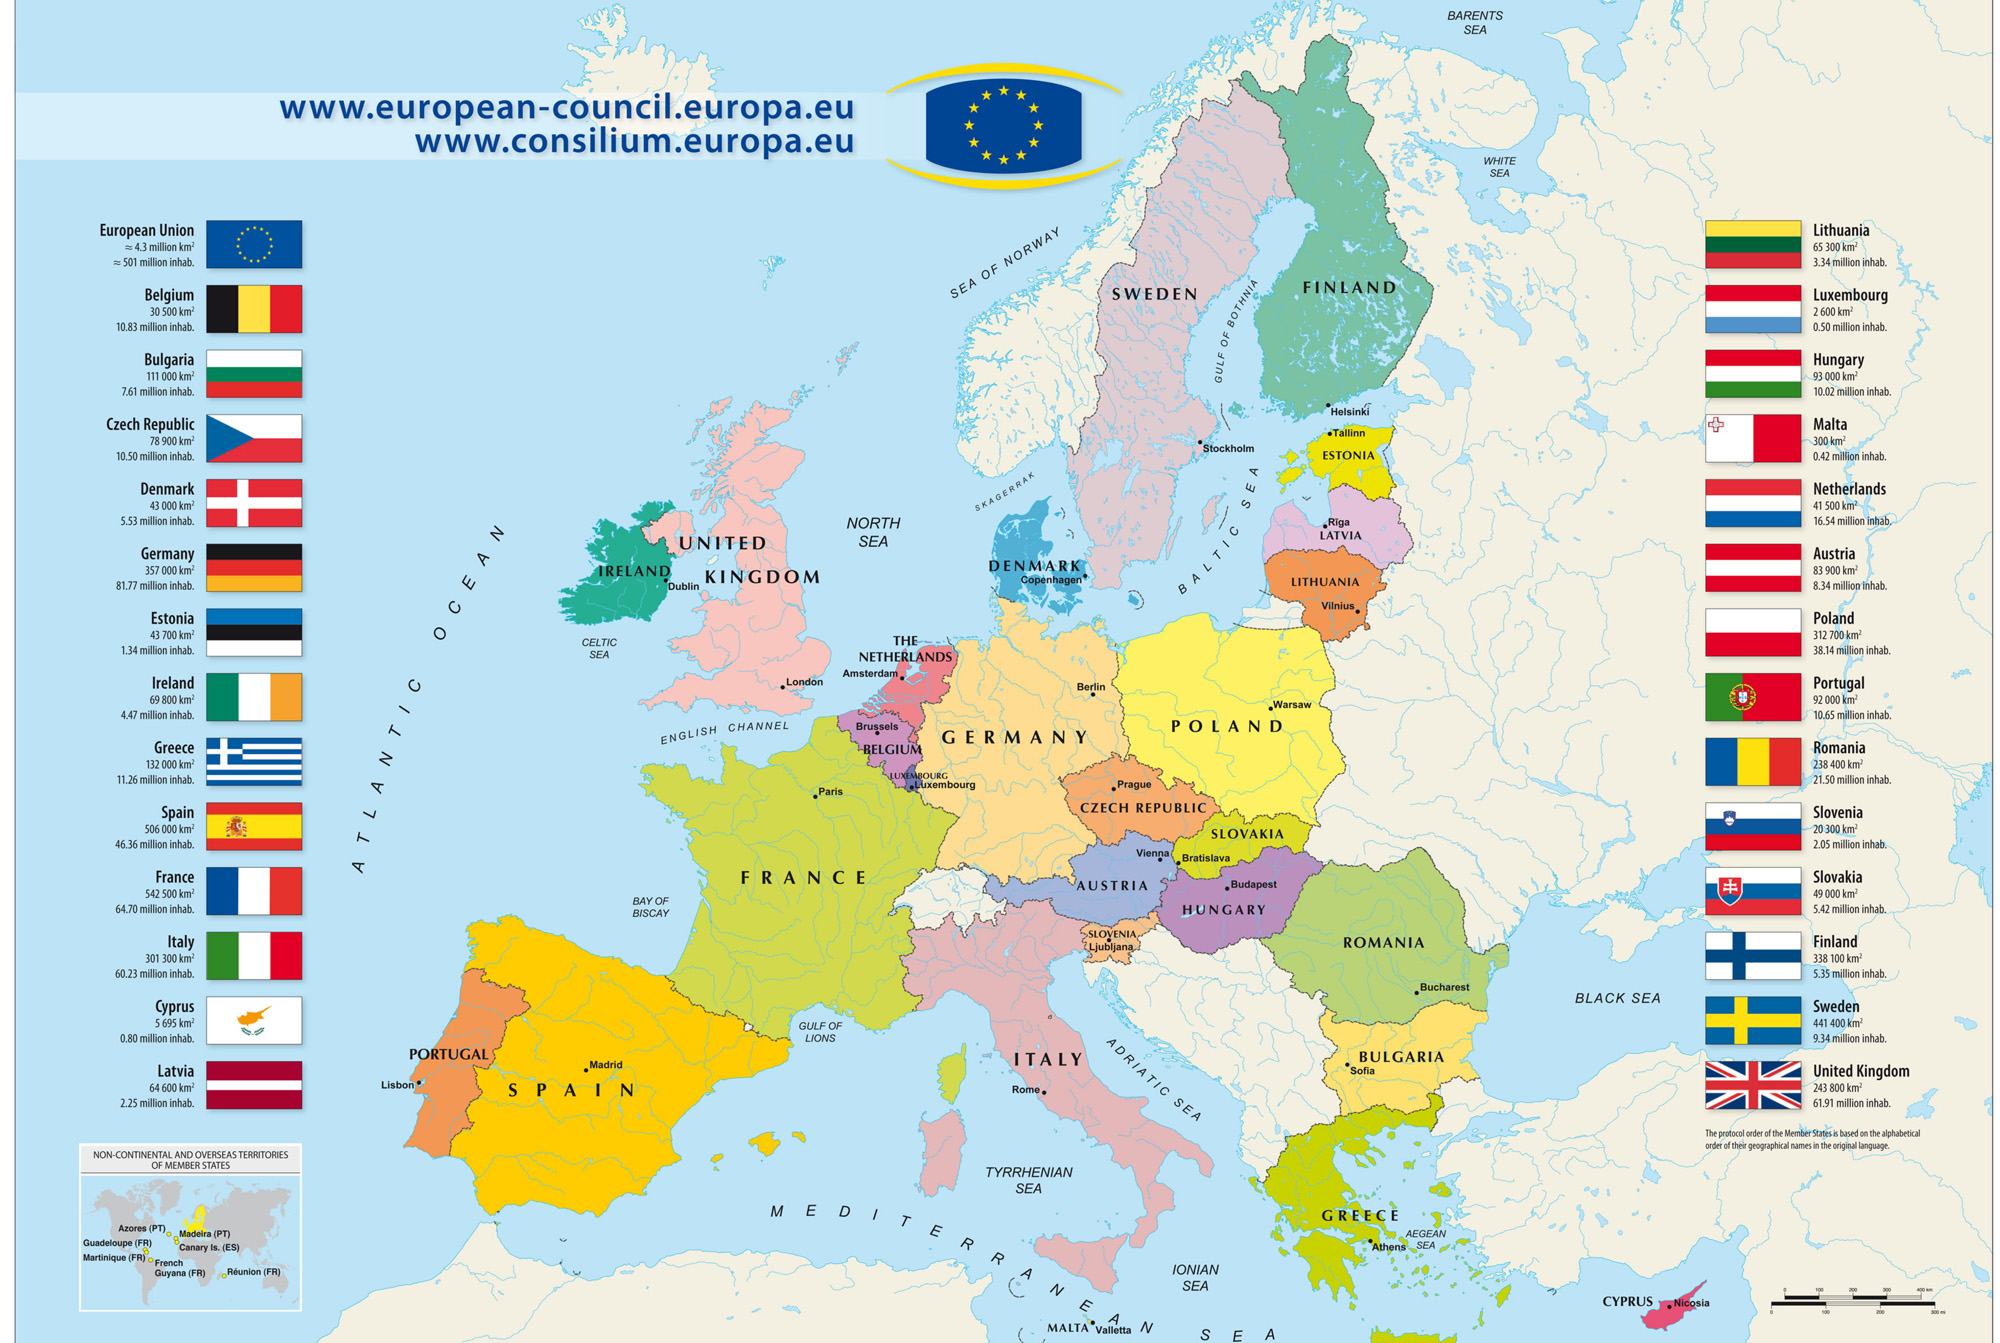 Bản đồ kích thước lớn 2024 sẽ mang đến cho bạn những trải nghiệm tuyệt vời nhất để khám phá vẻ đẹp của Châu Âu. Khám phá những điểm du lịch nổi tiếng, chưa được khám phá hay những khu vực mới lạ, hãy cùng khơi nguồn cảm hứng và khát khao với những hình ảnh đẹp nhất từ bản đồ Châu Âu kích thước lớn 2024!